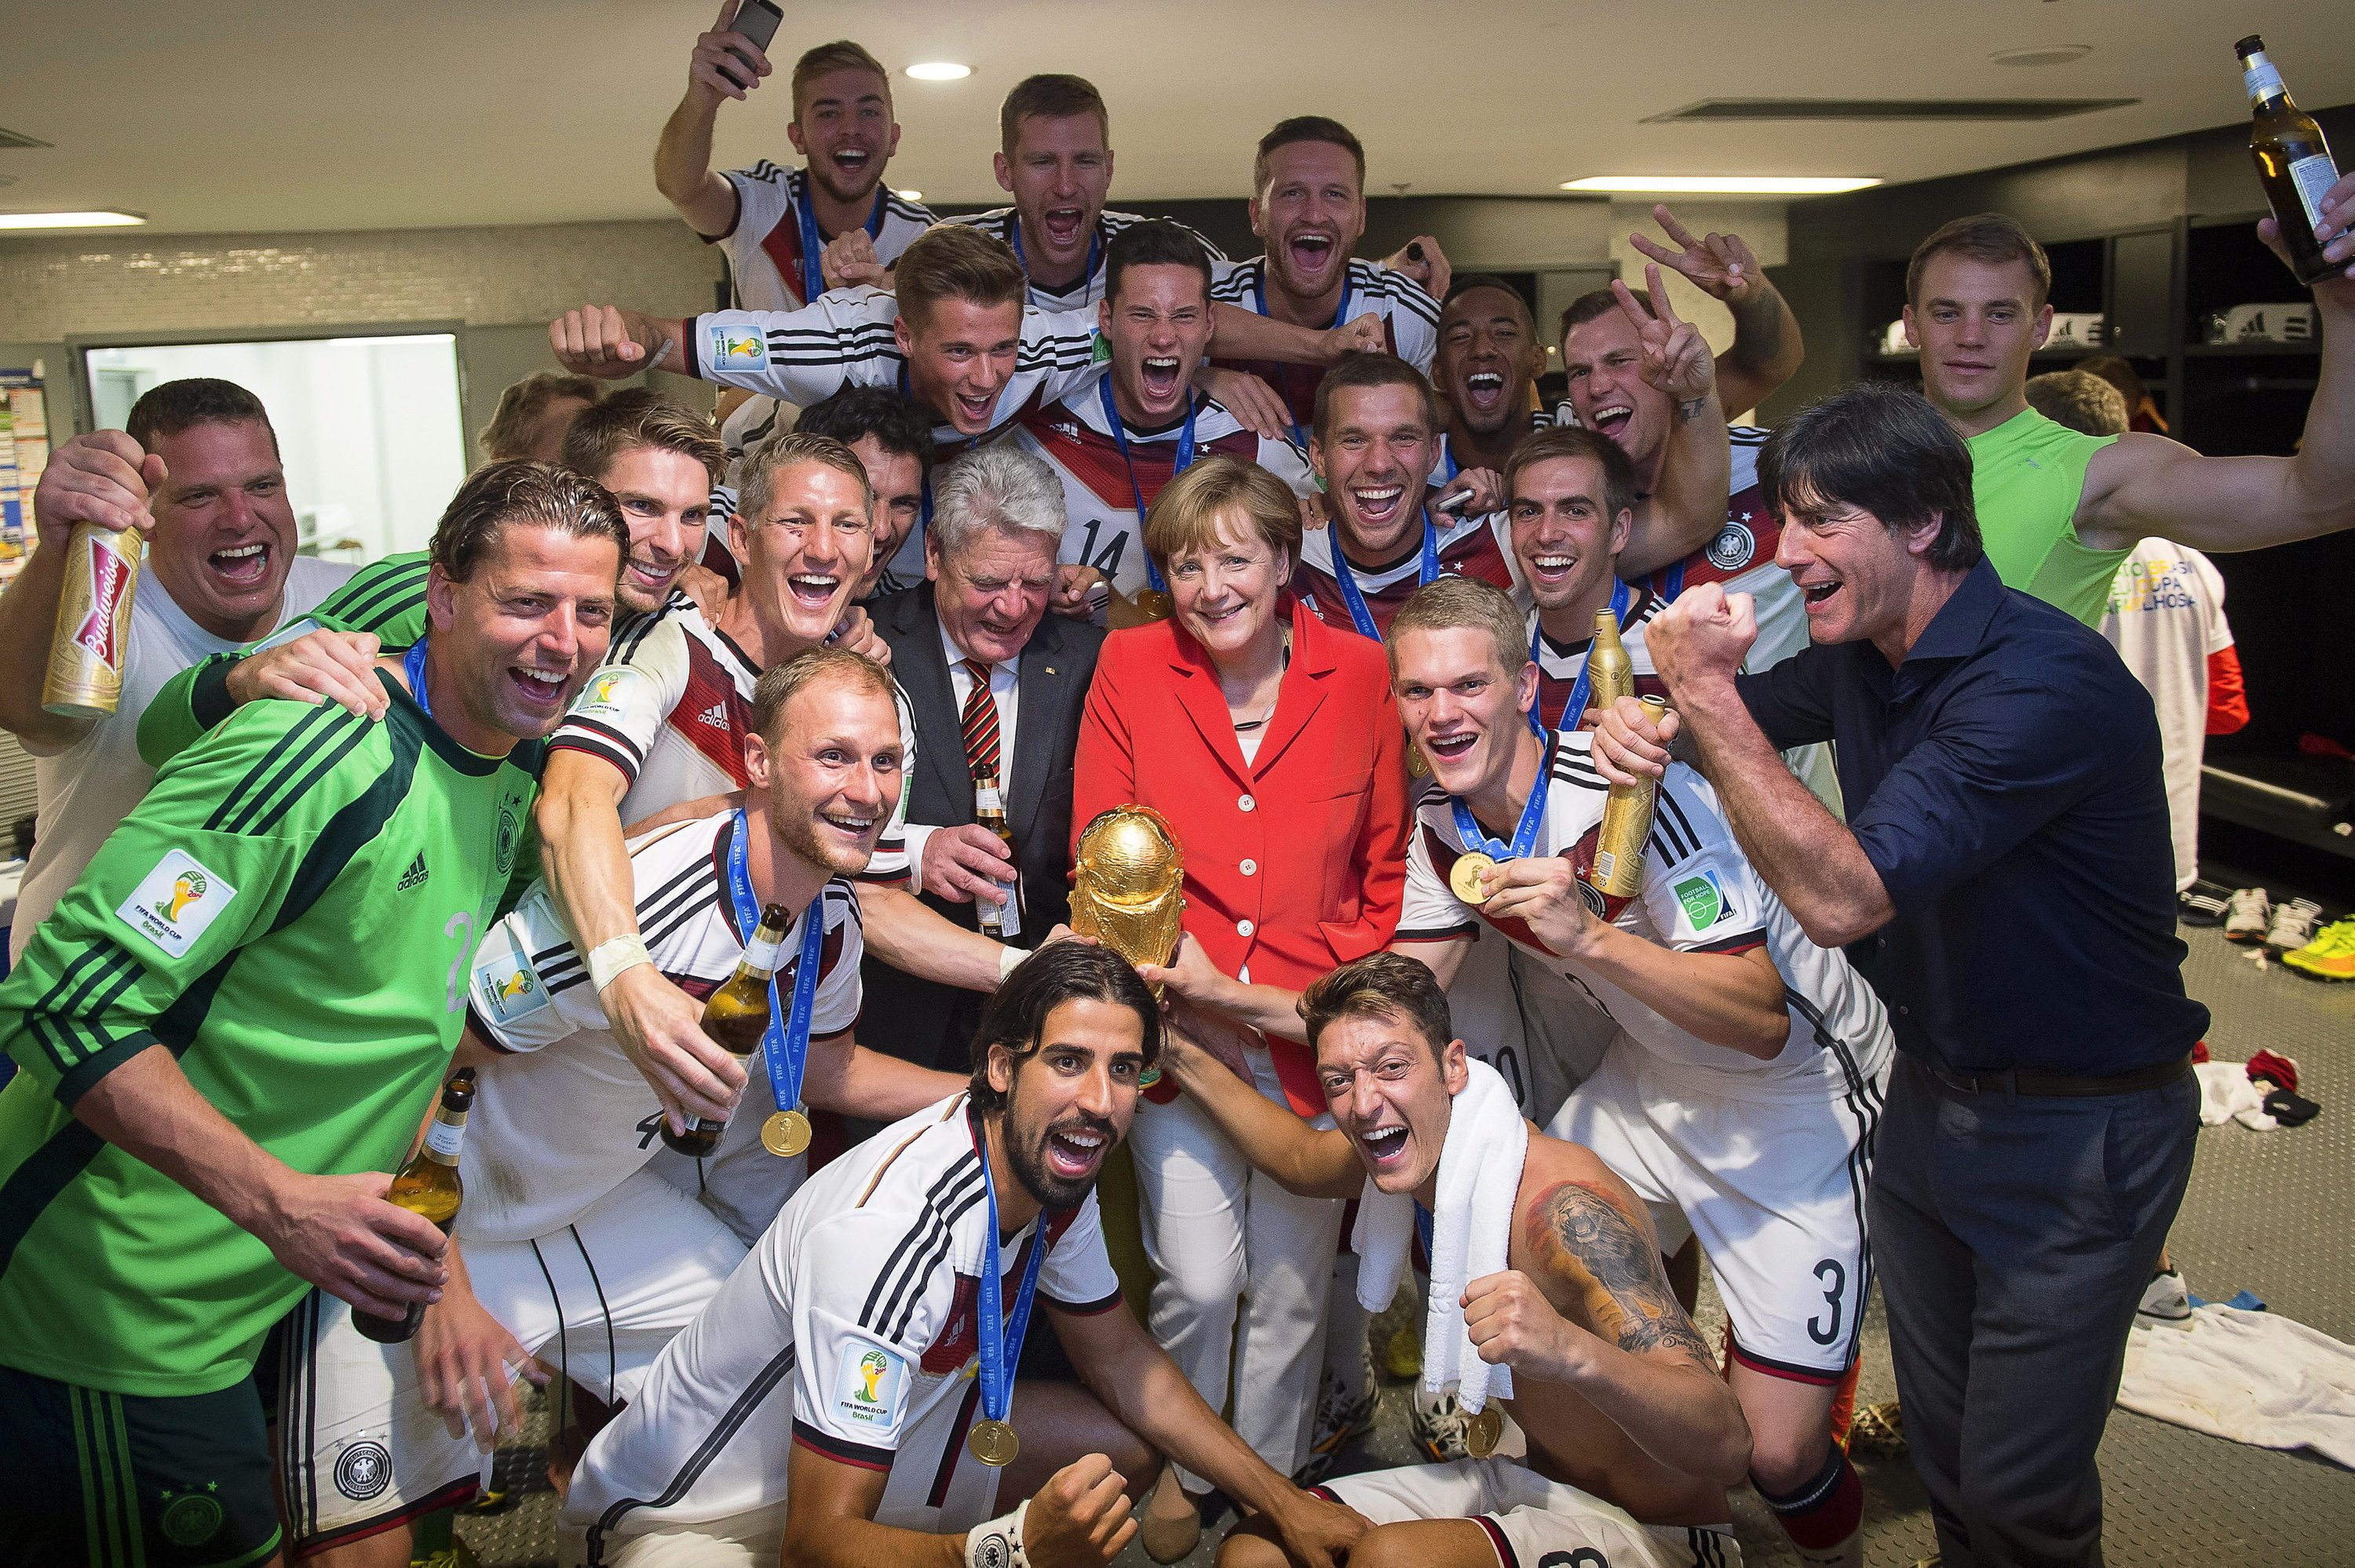 Bundeskanzlerin Angela Merkel und Bundespräsident Joachim Gauck feiern in der Kabine der deutschen Nationalmannschaft: Auf Twitter löste das Endspiel einen Rekord an Tweets aus.